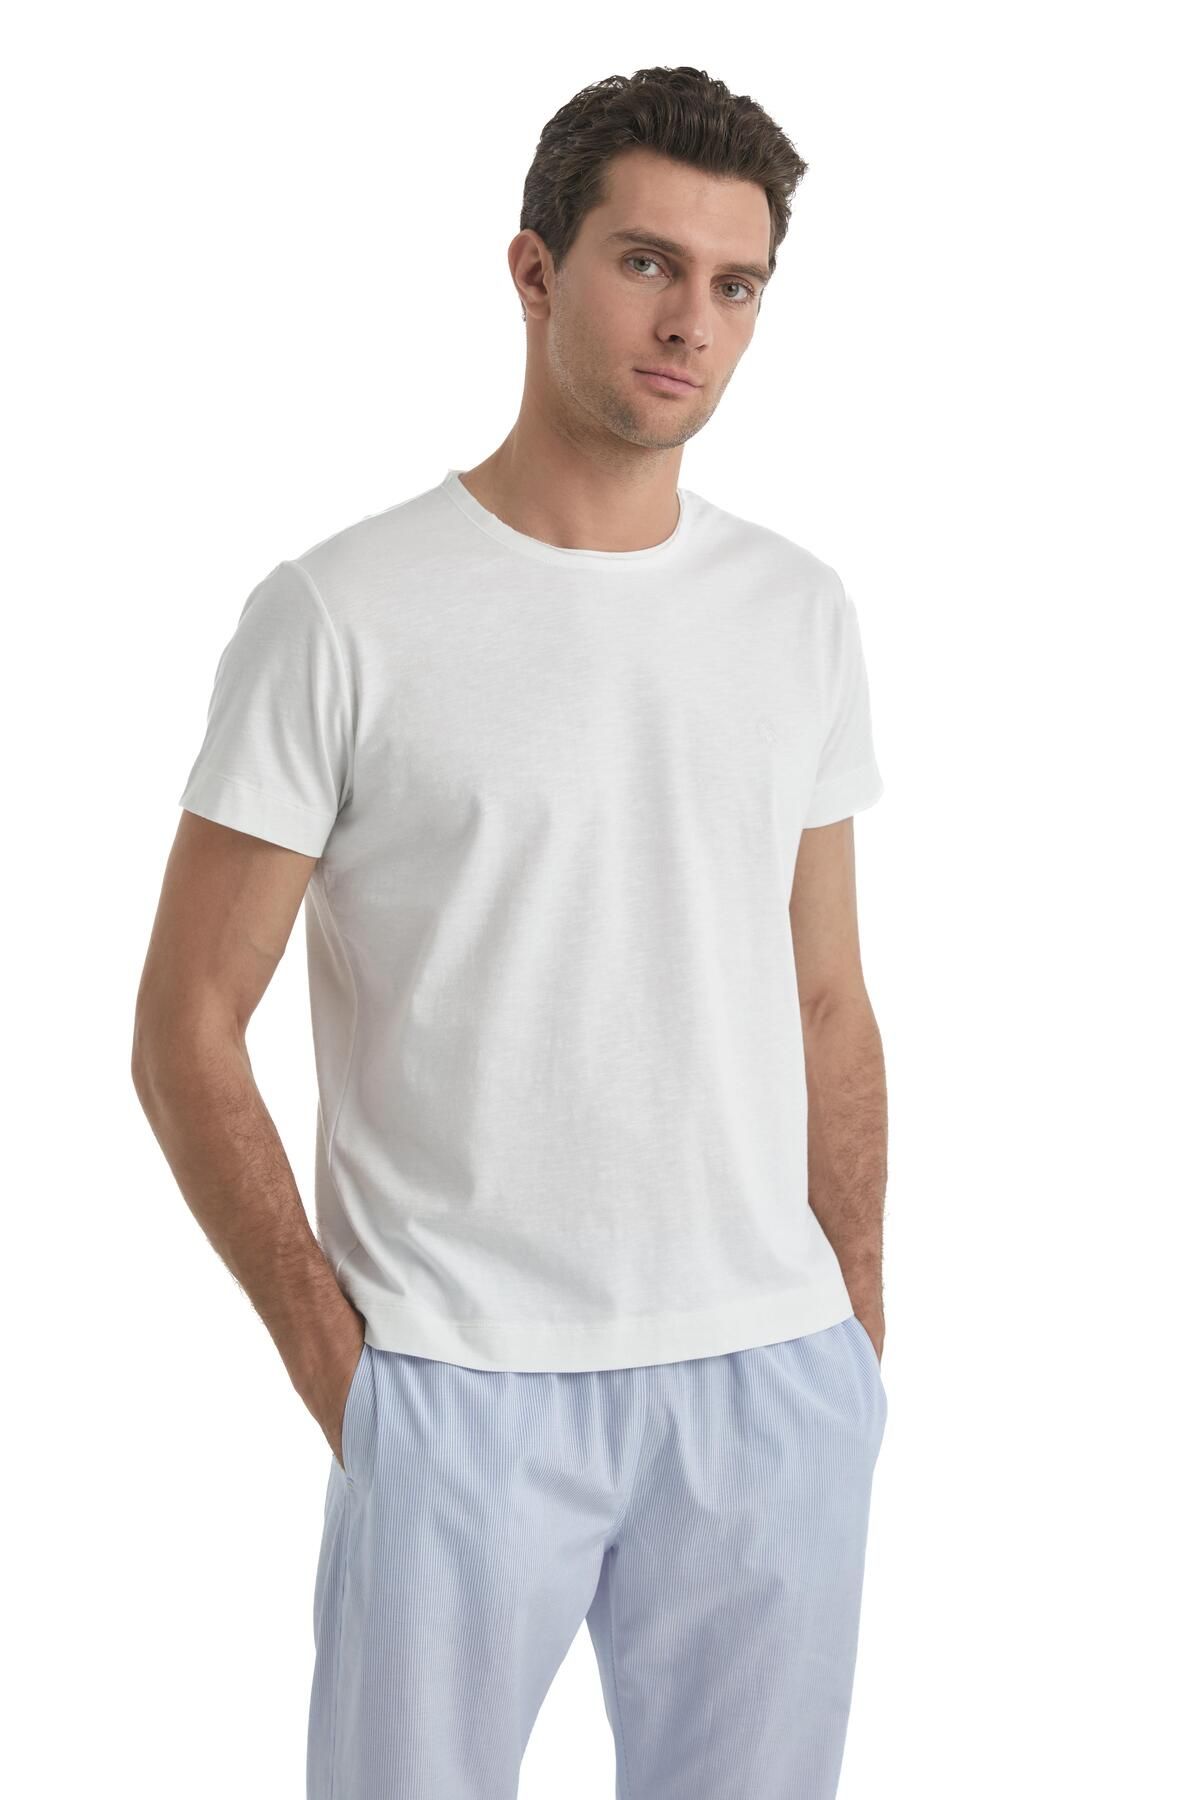 Blackspade Erkek Beyaz T-Shirt 40524